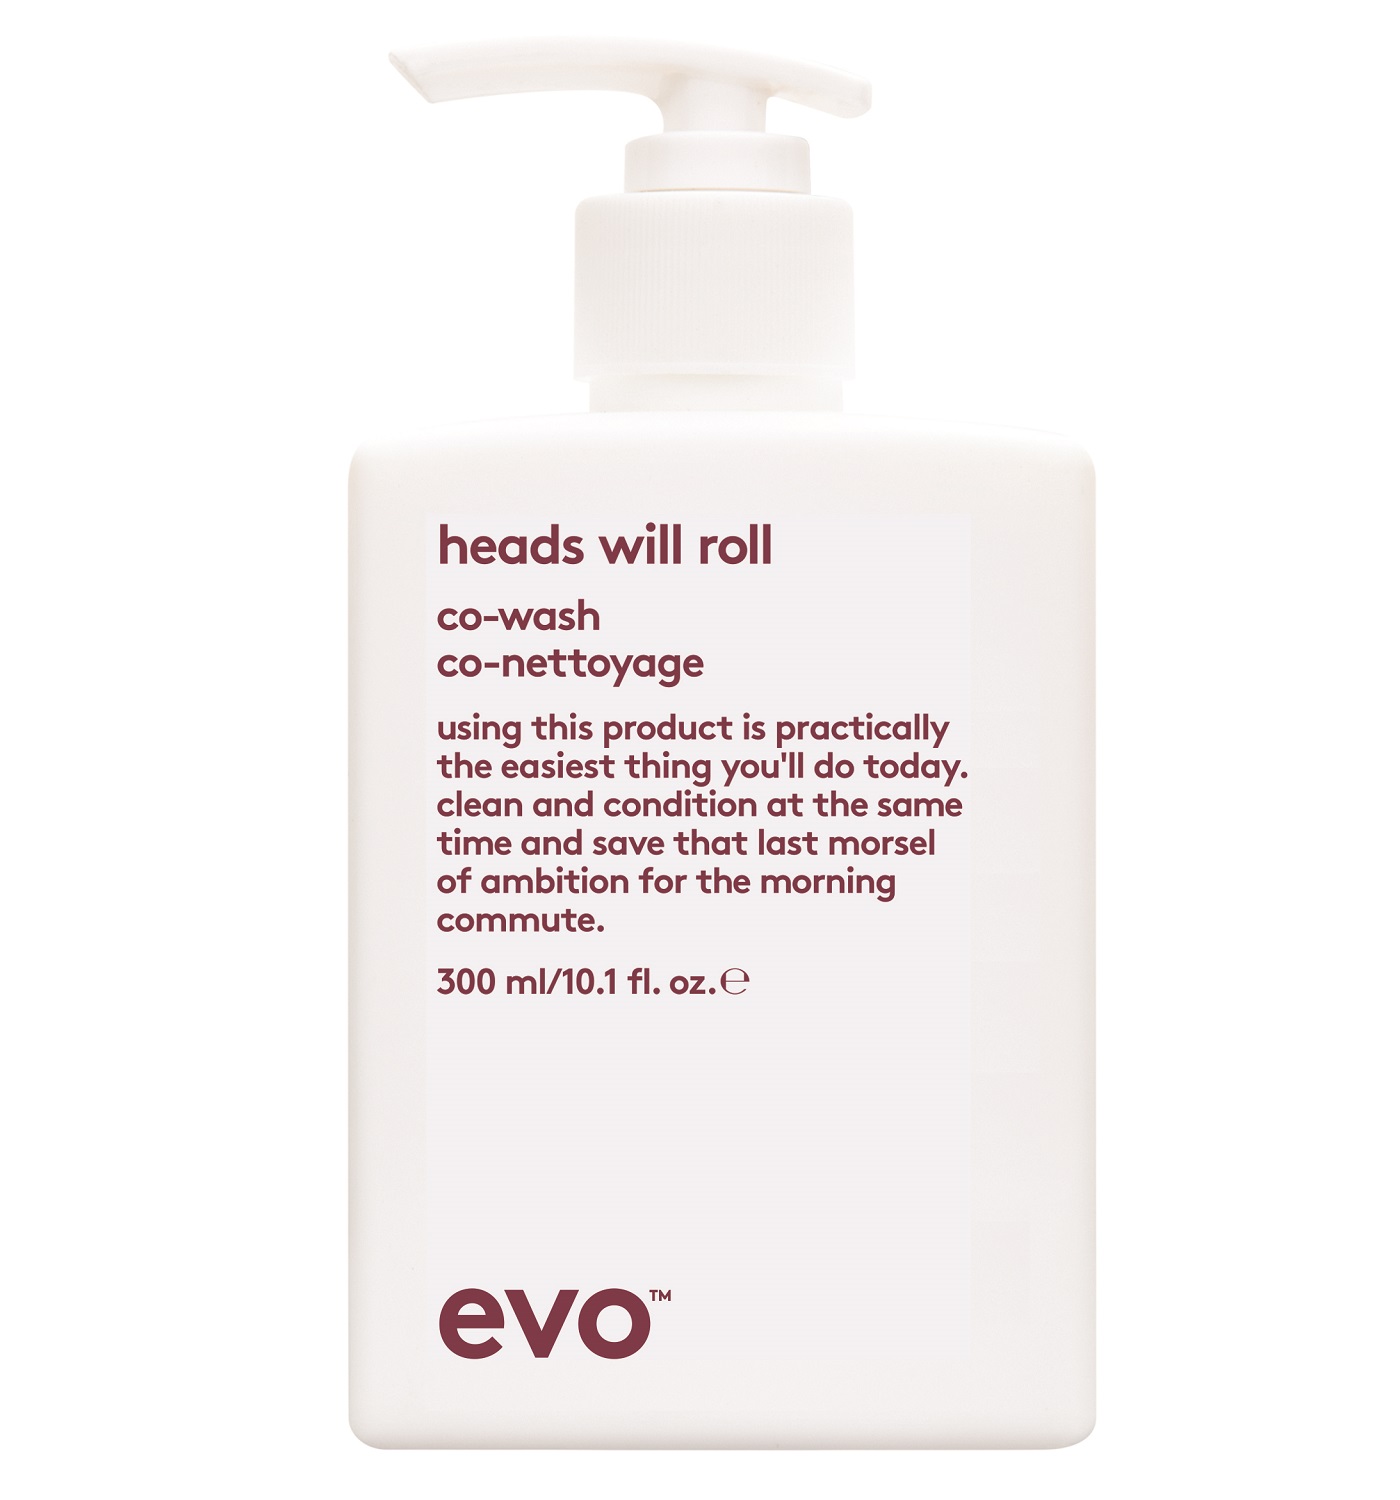 EVO Ко-вошинг [головокружительный] для вьющихся и кудрявых волос, 300 мл (EVO, curl) evo ко вошинг [головокружительный] для вьющихся и кудрявых волос 300 мл evo curl